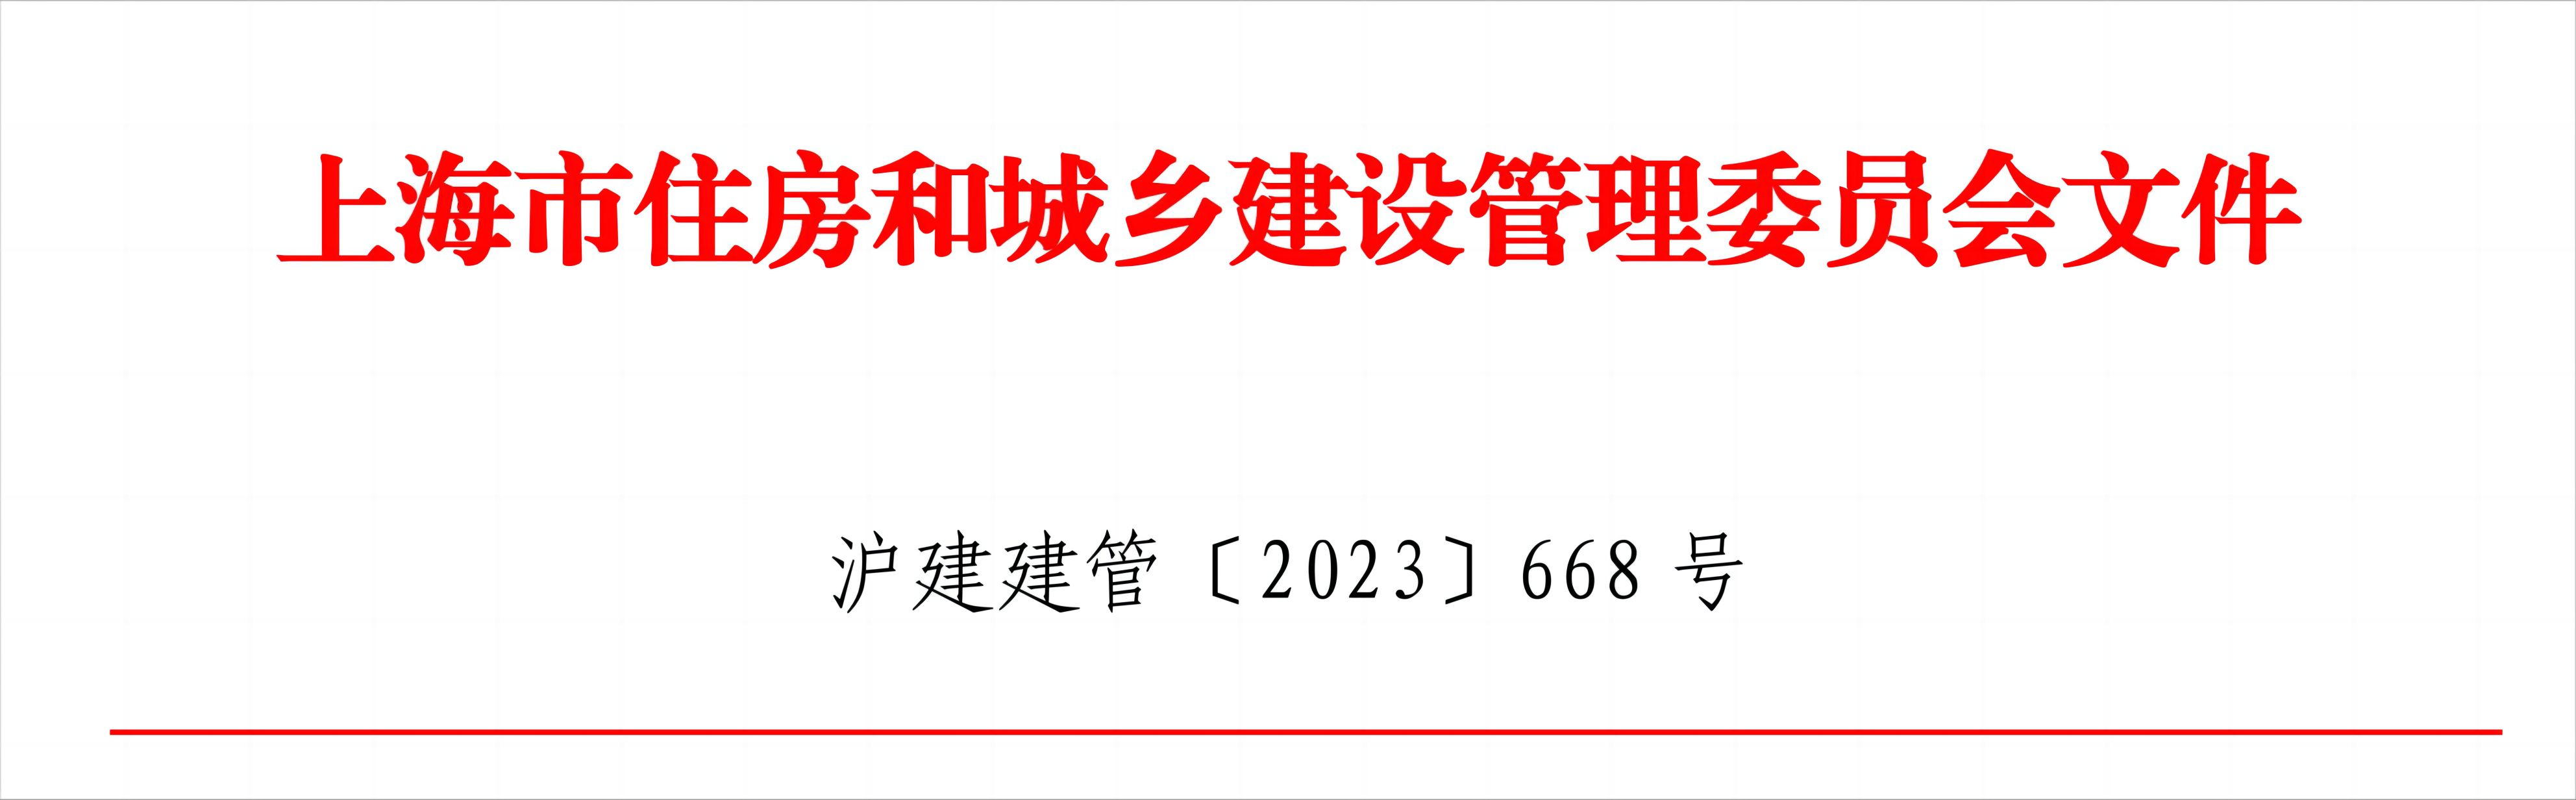 上海市住房和城乡建设管理委员会关于在本市试行BIM 智能辅助审查的通知_00(1).png